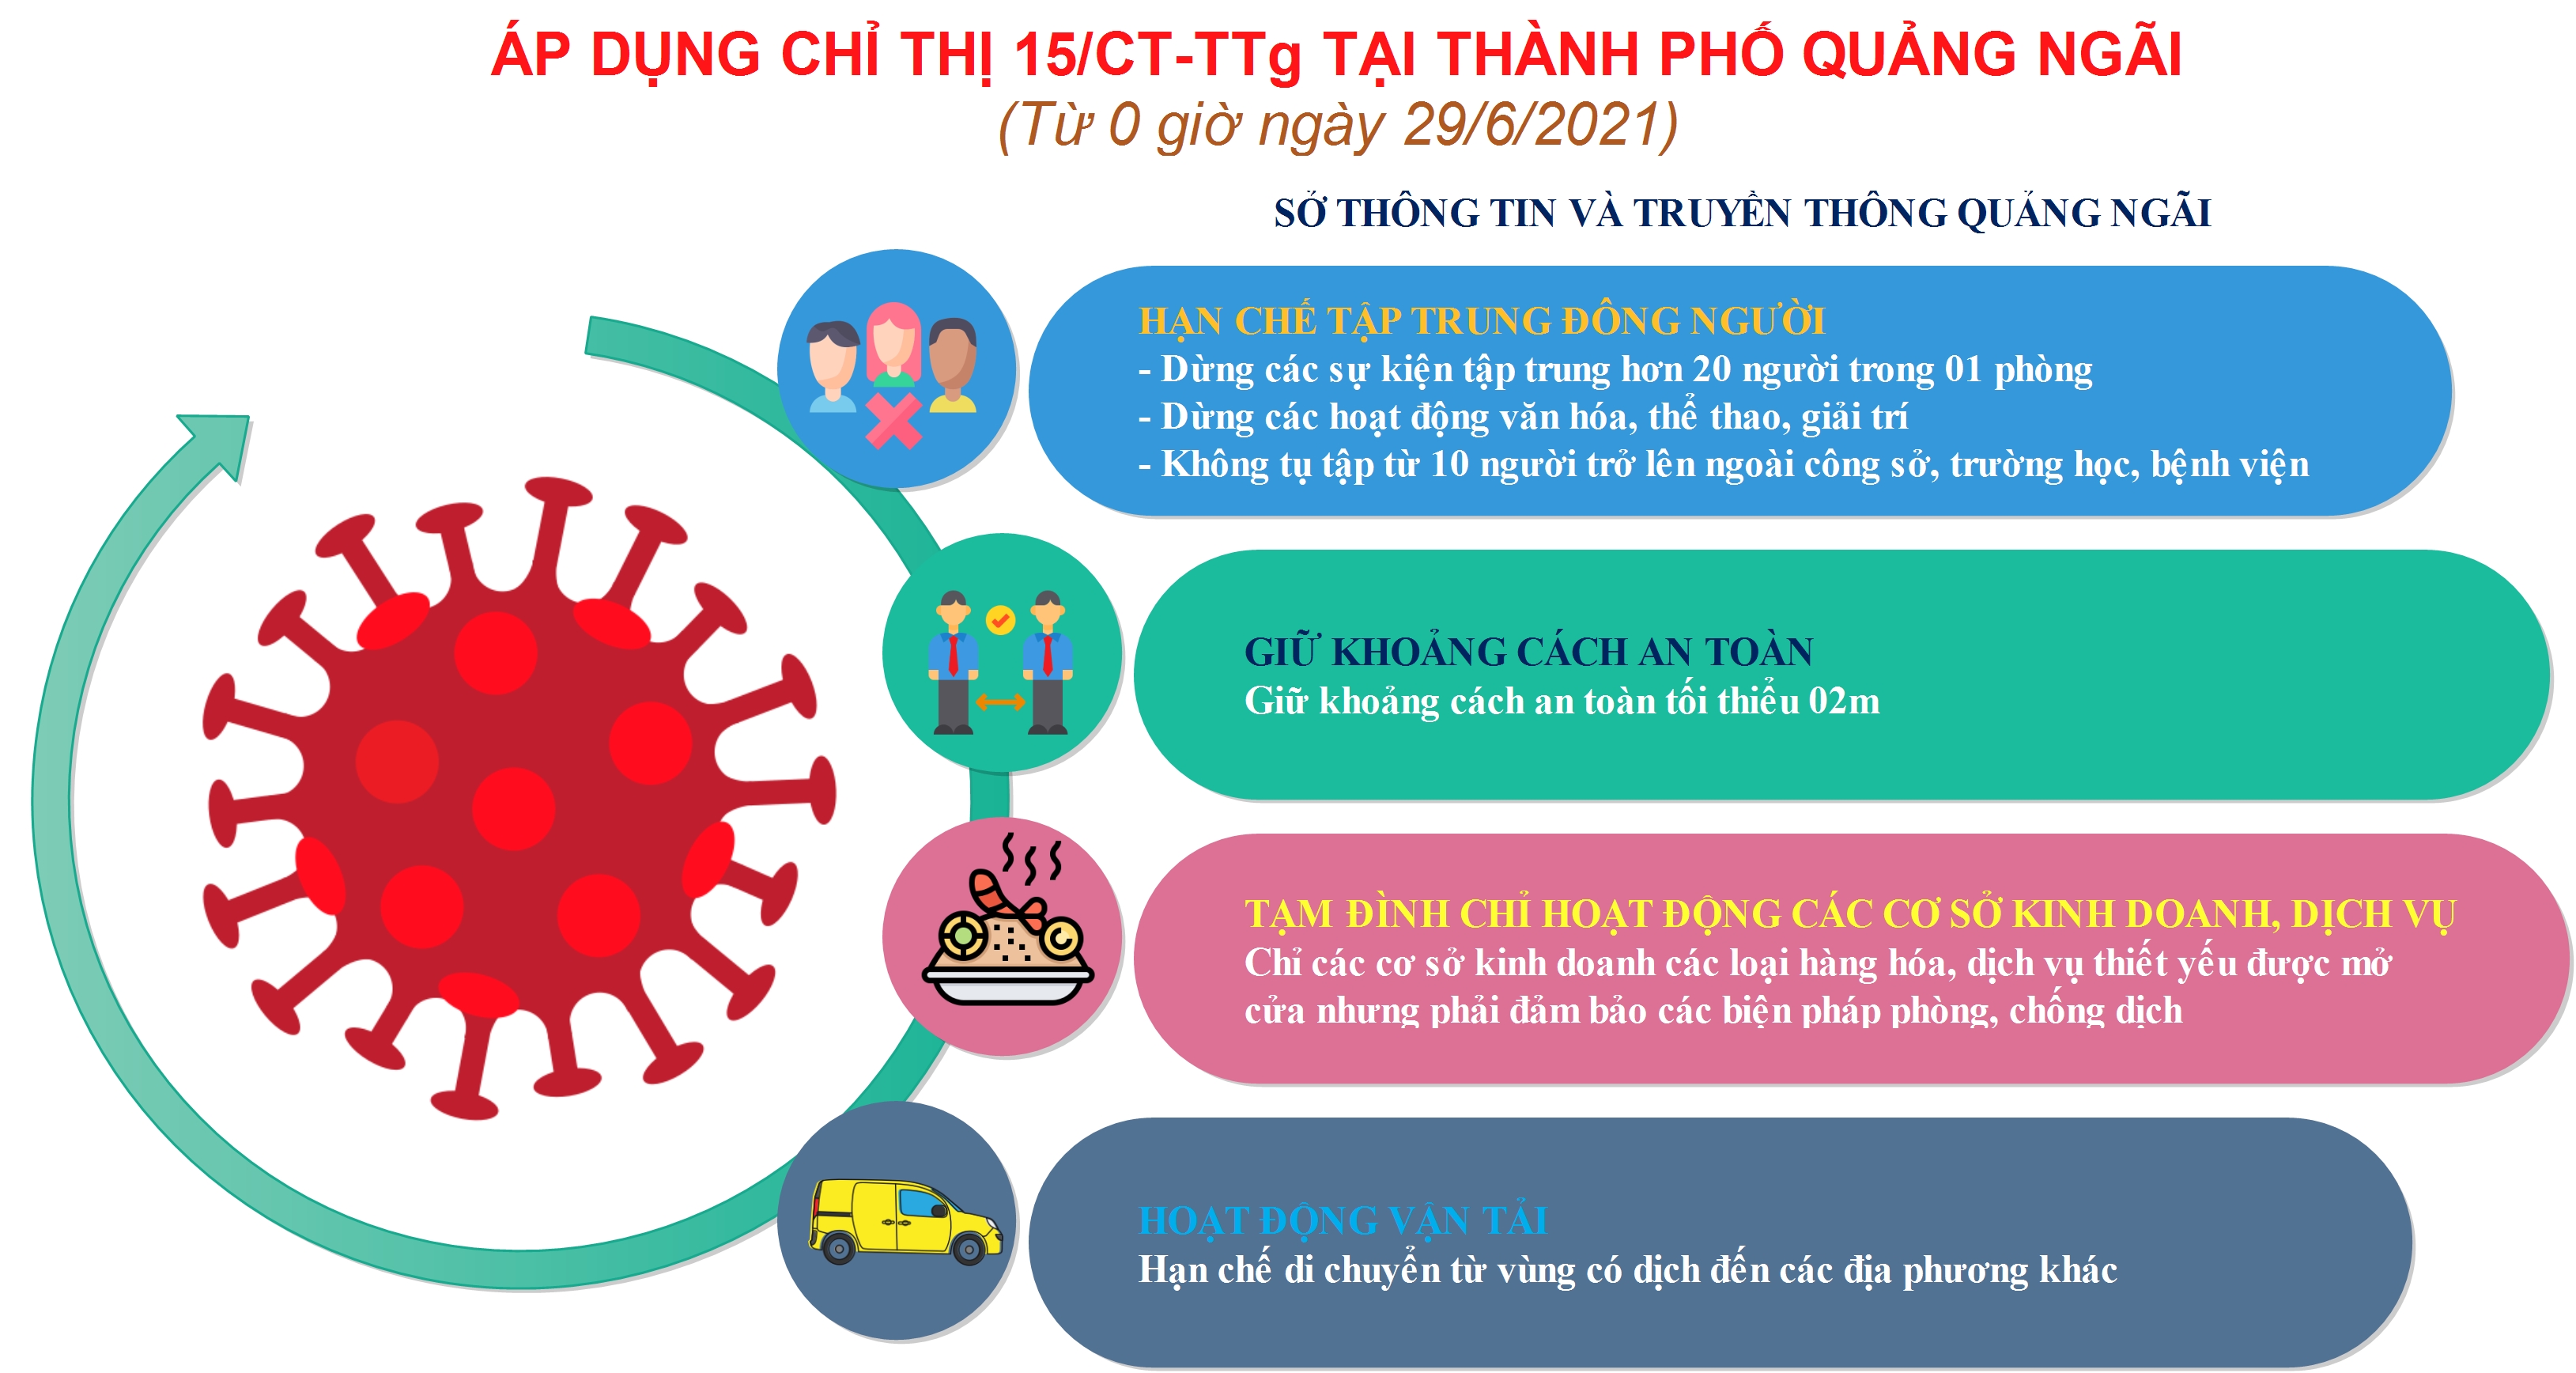 Từ 0 giờ ngày 29.6.2021 Thành phố Quảng Ngãi thực hiện cách ly y tế theo chỉ thị 15/CT-TTg